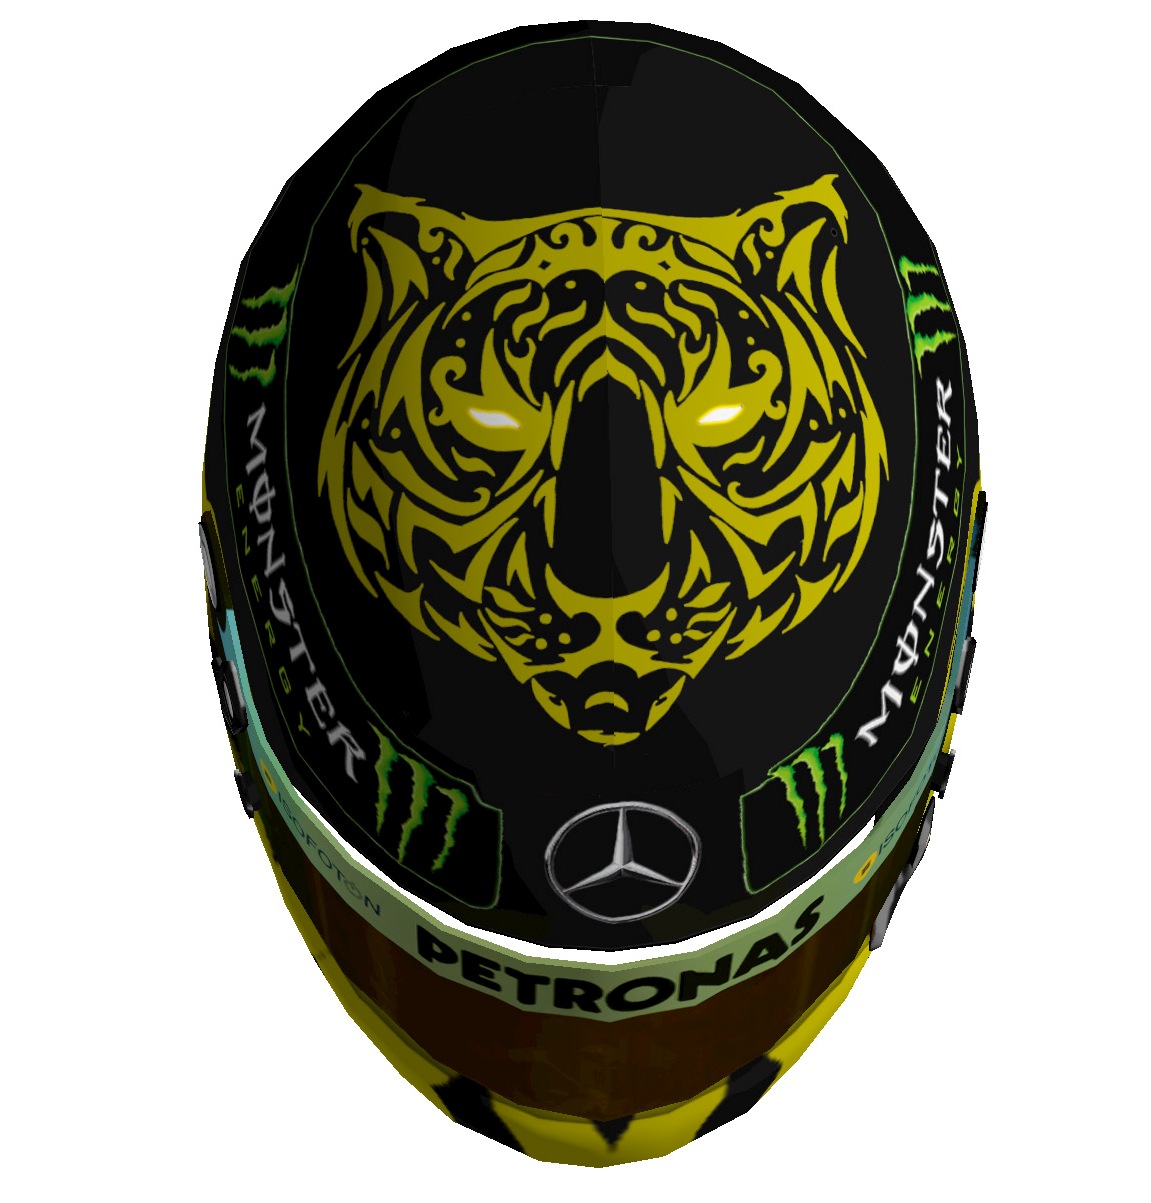 Mercedes Helmet Template 2.jpg